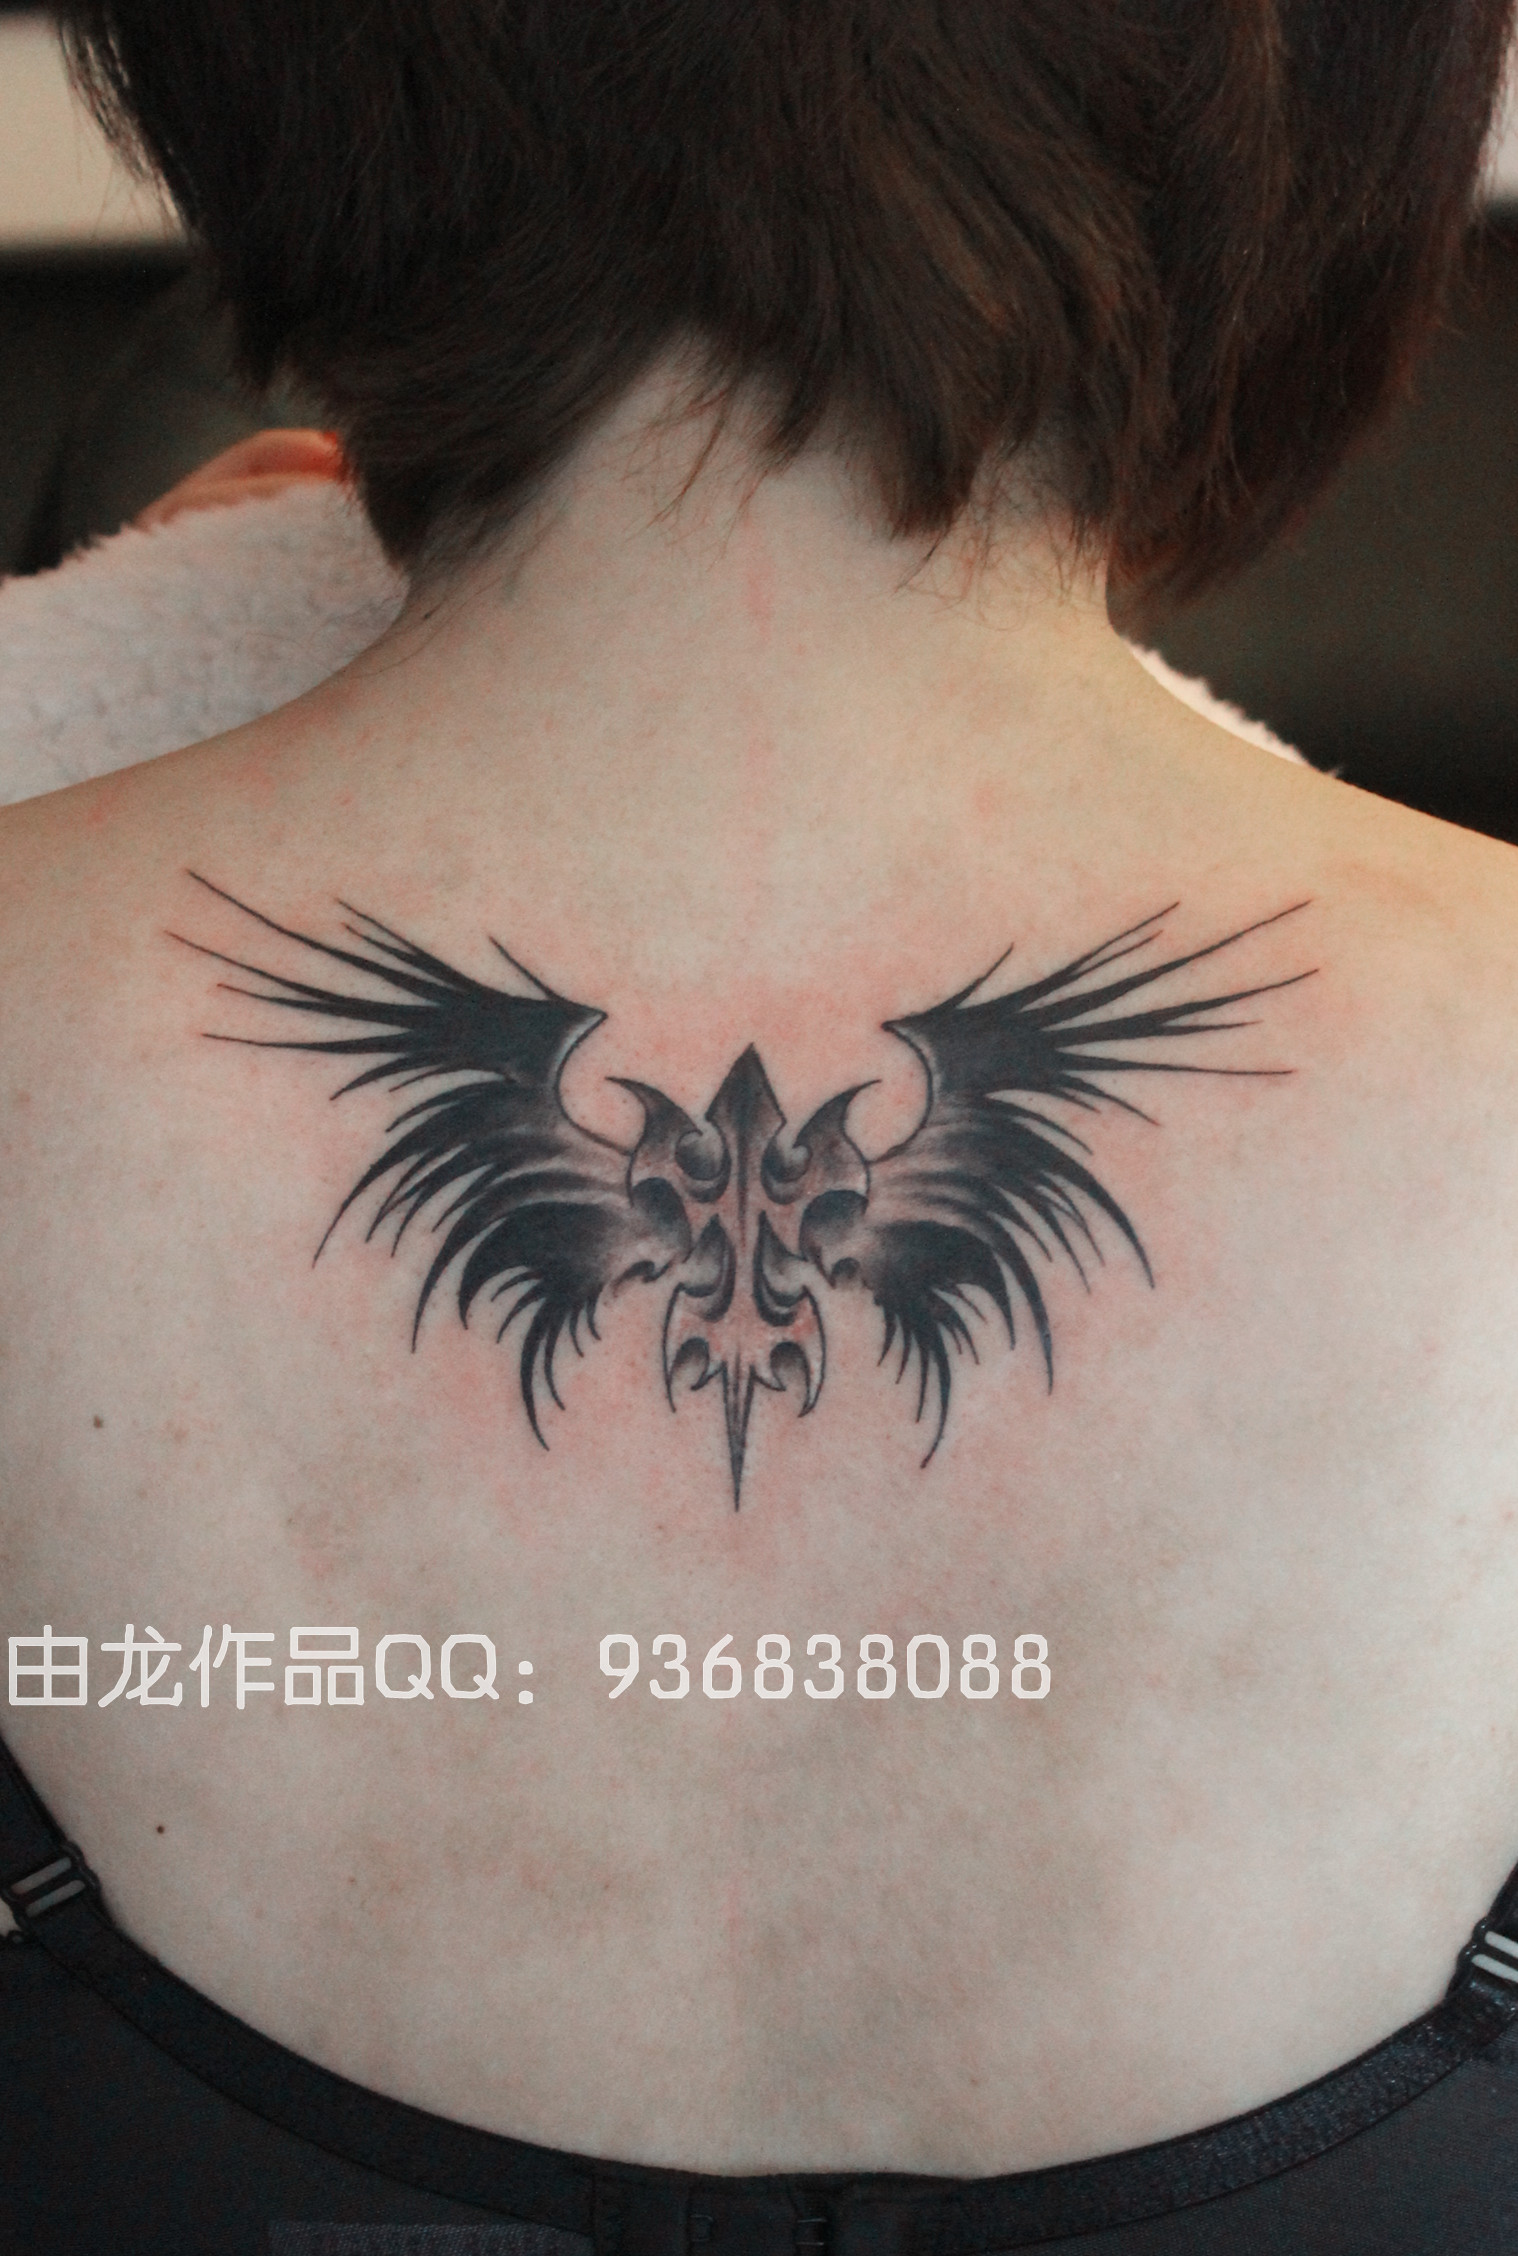 后背蝙蝠翅膀英文短语纹身图案 - 广州纹彩刺青